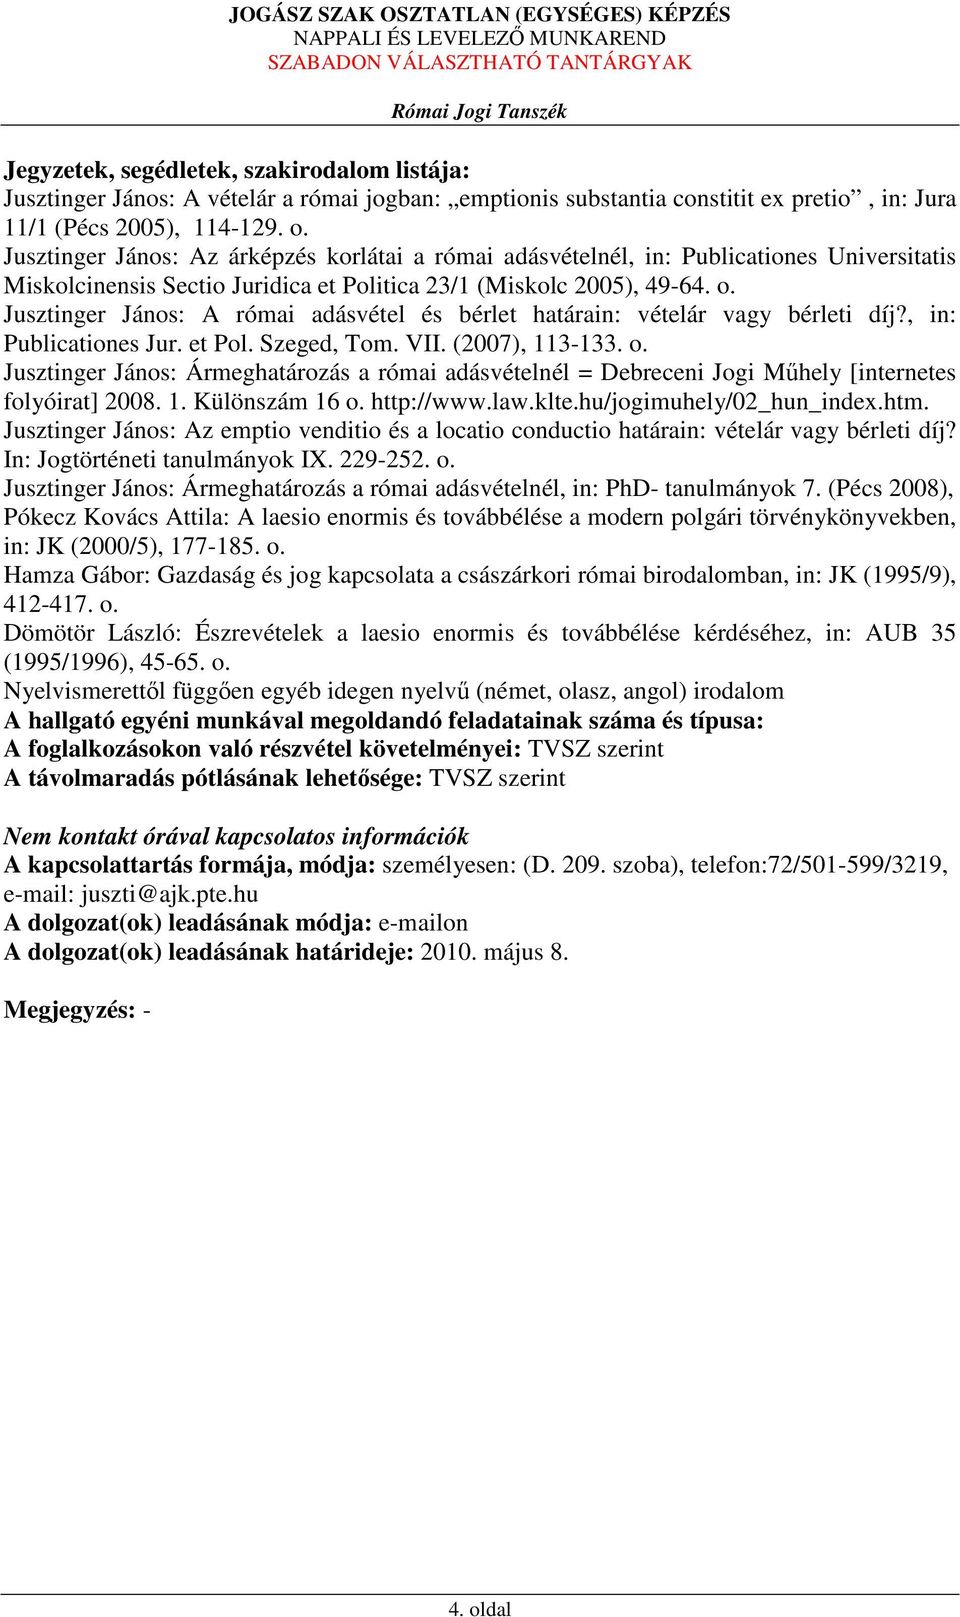 Jusztinger János: A római adásvétel és bérlet határain: vételár vagy bérleti díj?, in: Publicationes Jur. et Pol. Szeged, Tom. VII. (2007), 113-133. o.